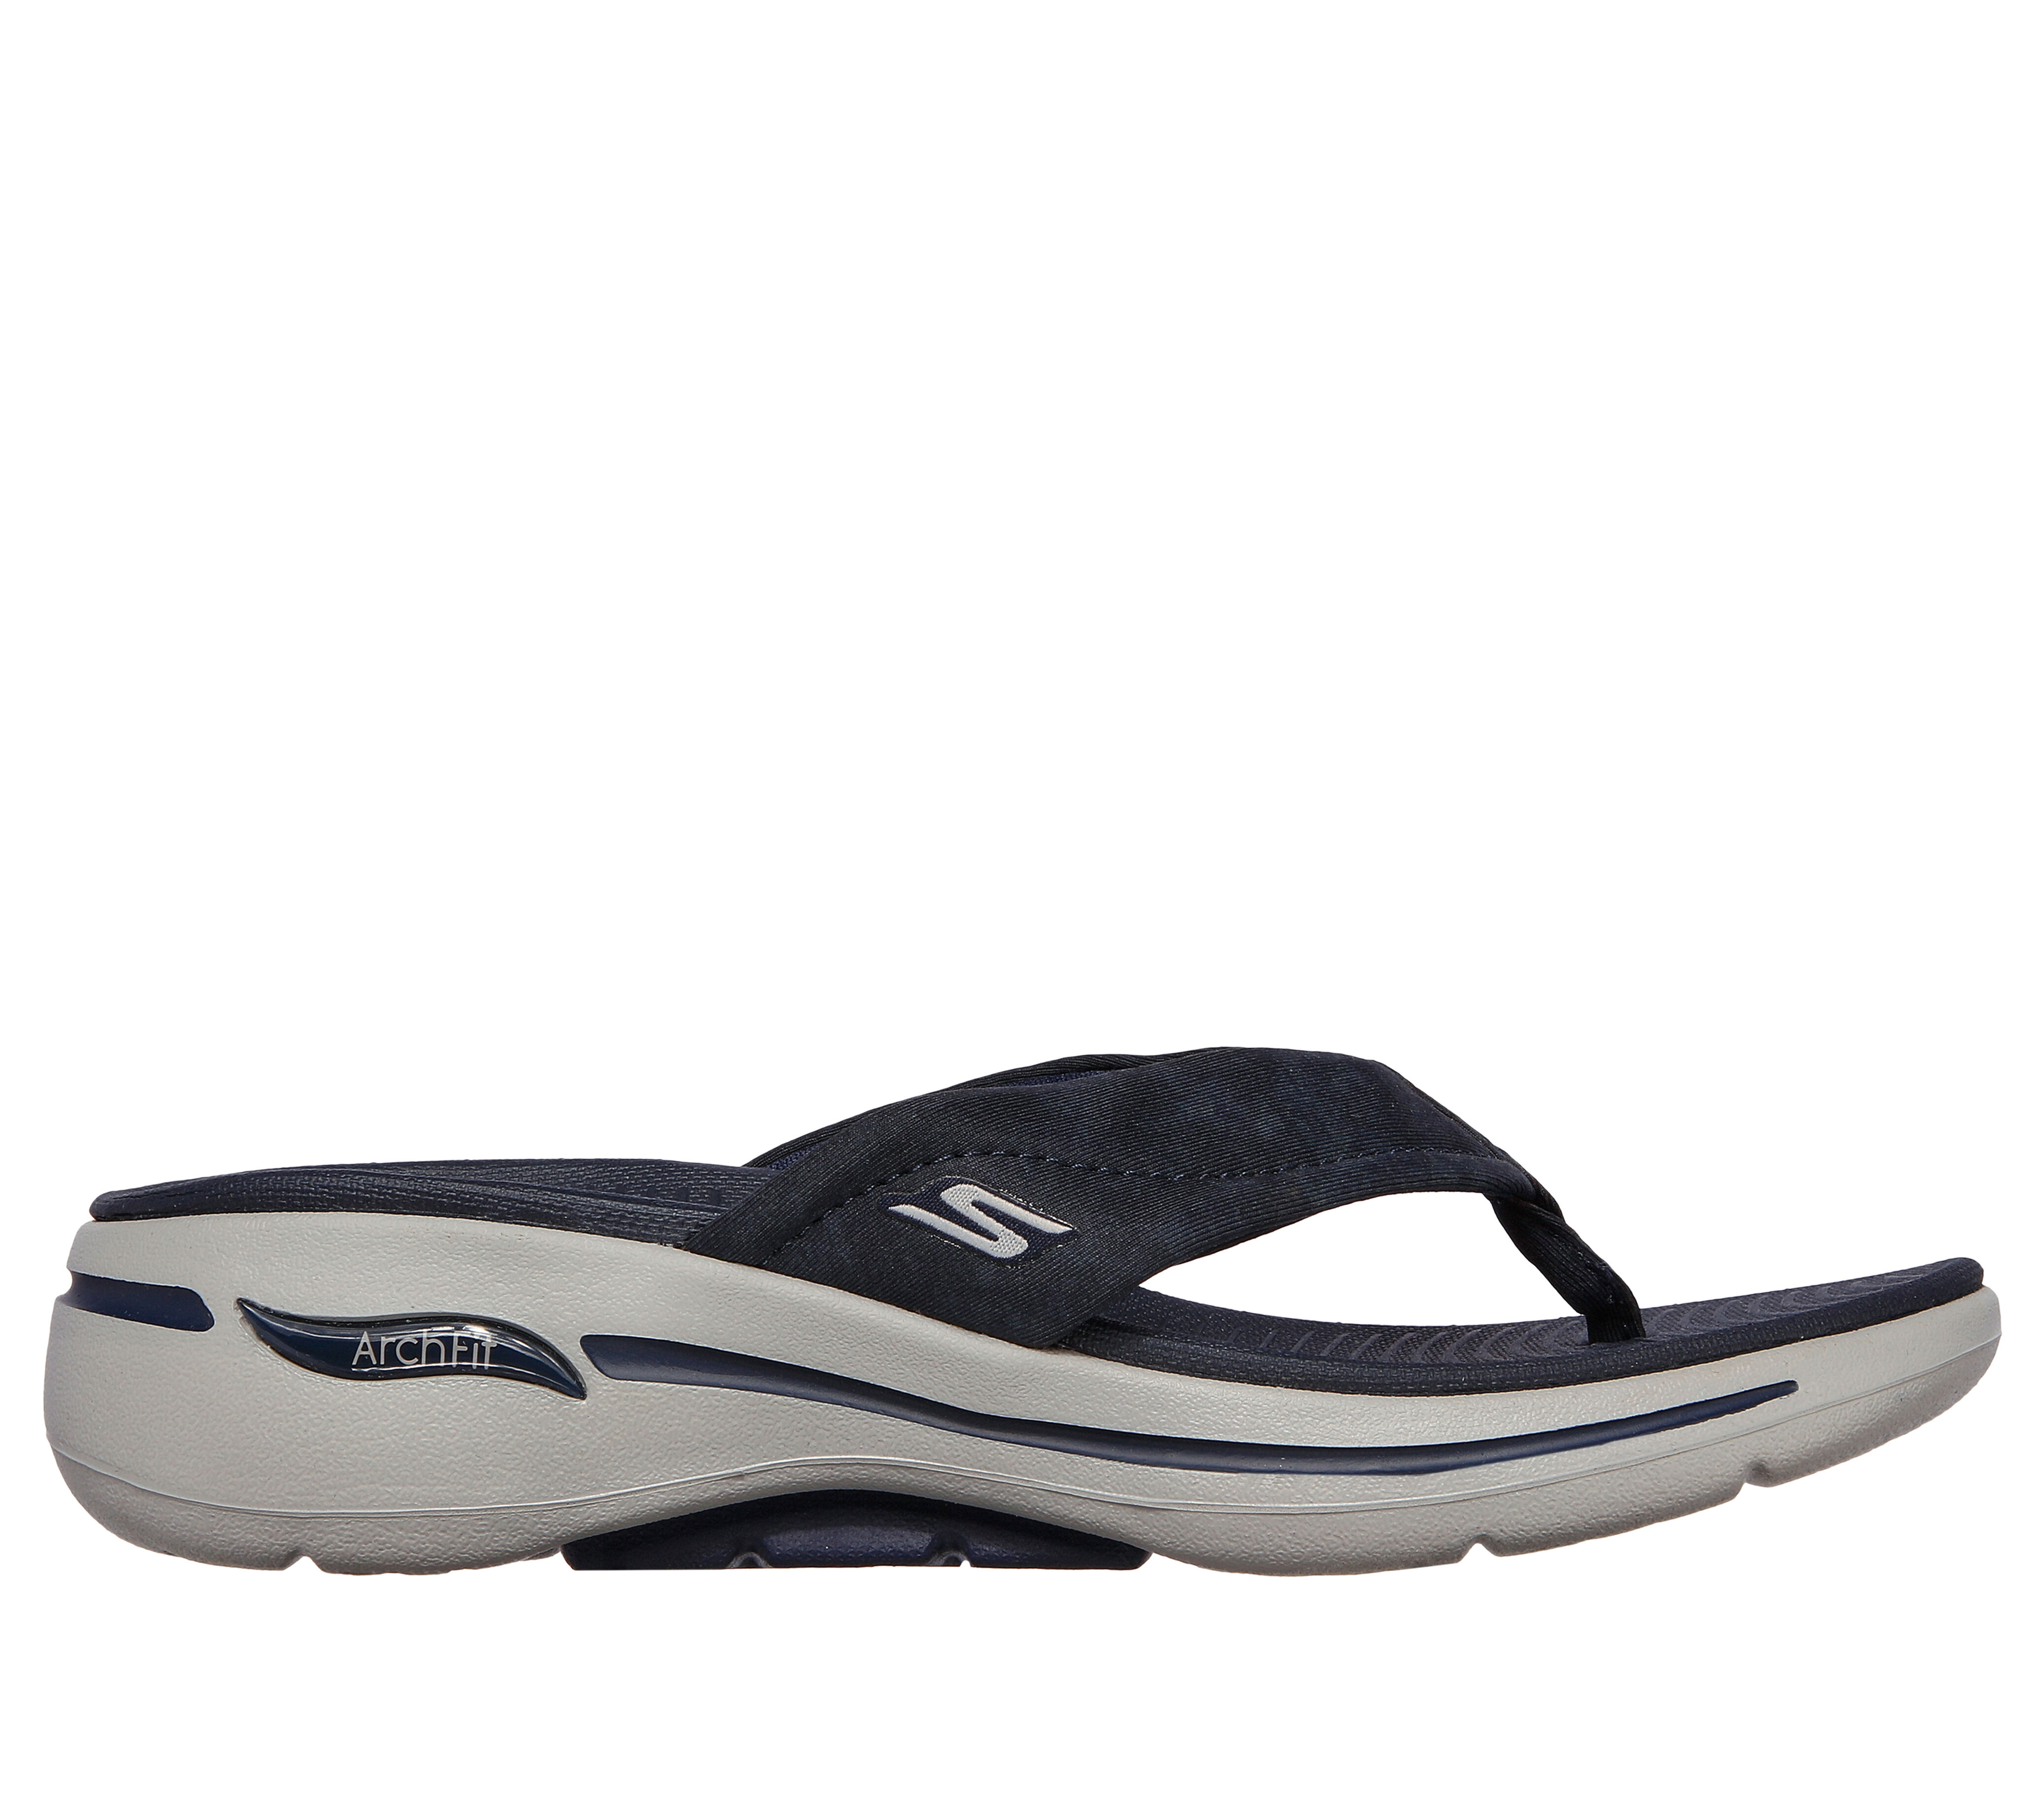 sketchers navy sandals